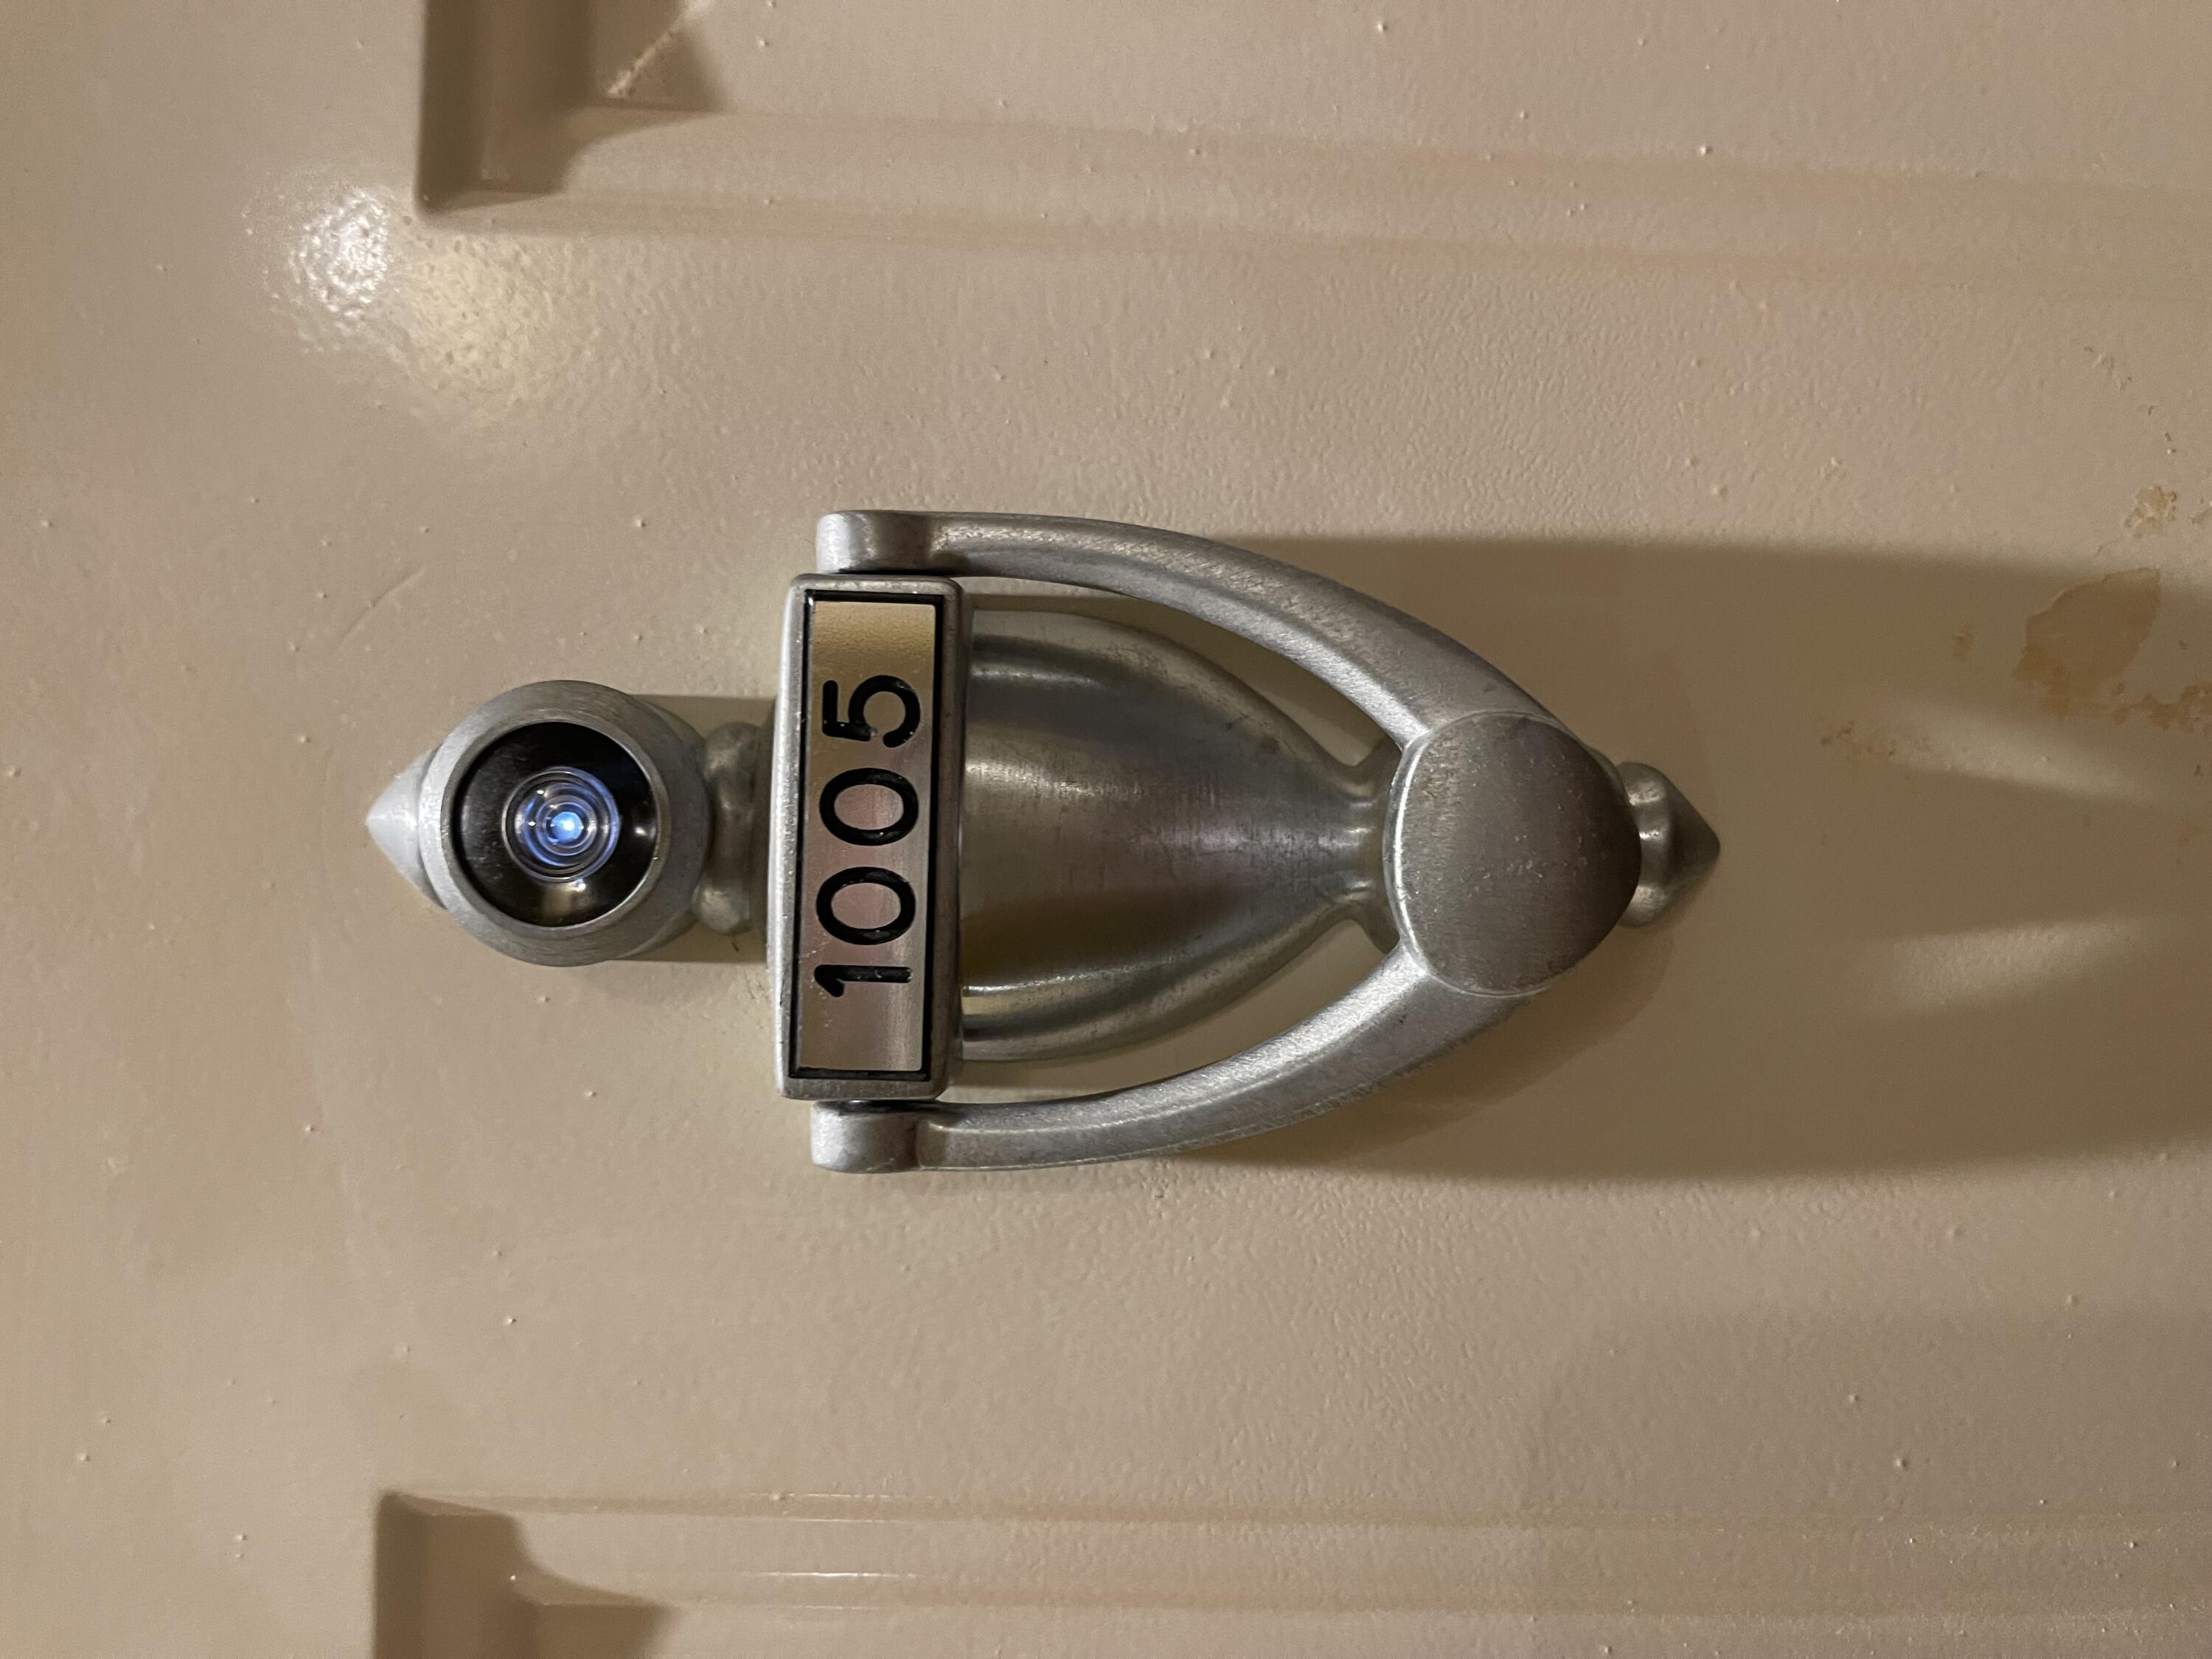 a close view of door lock